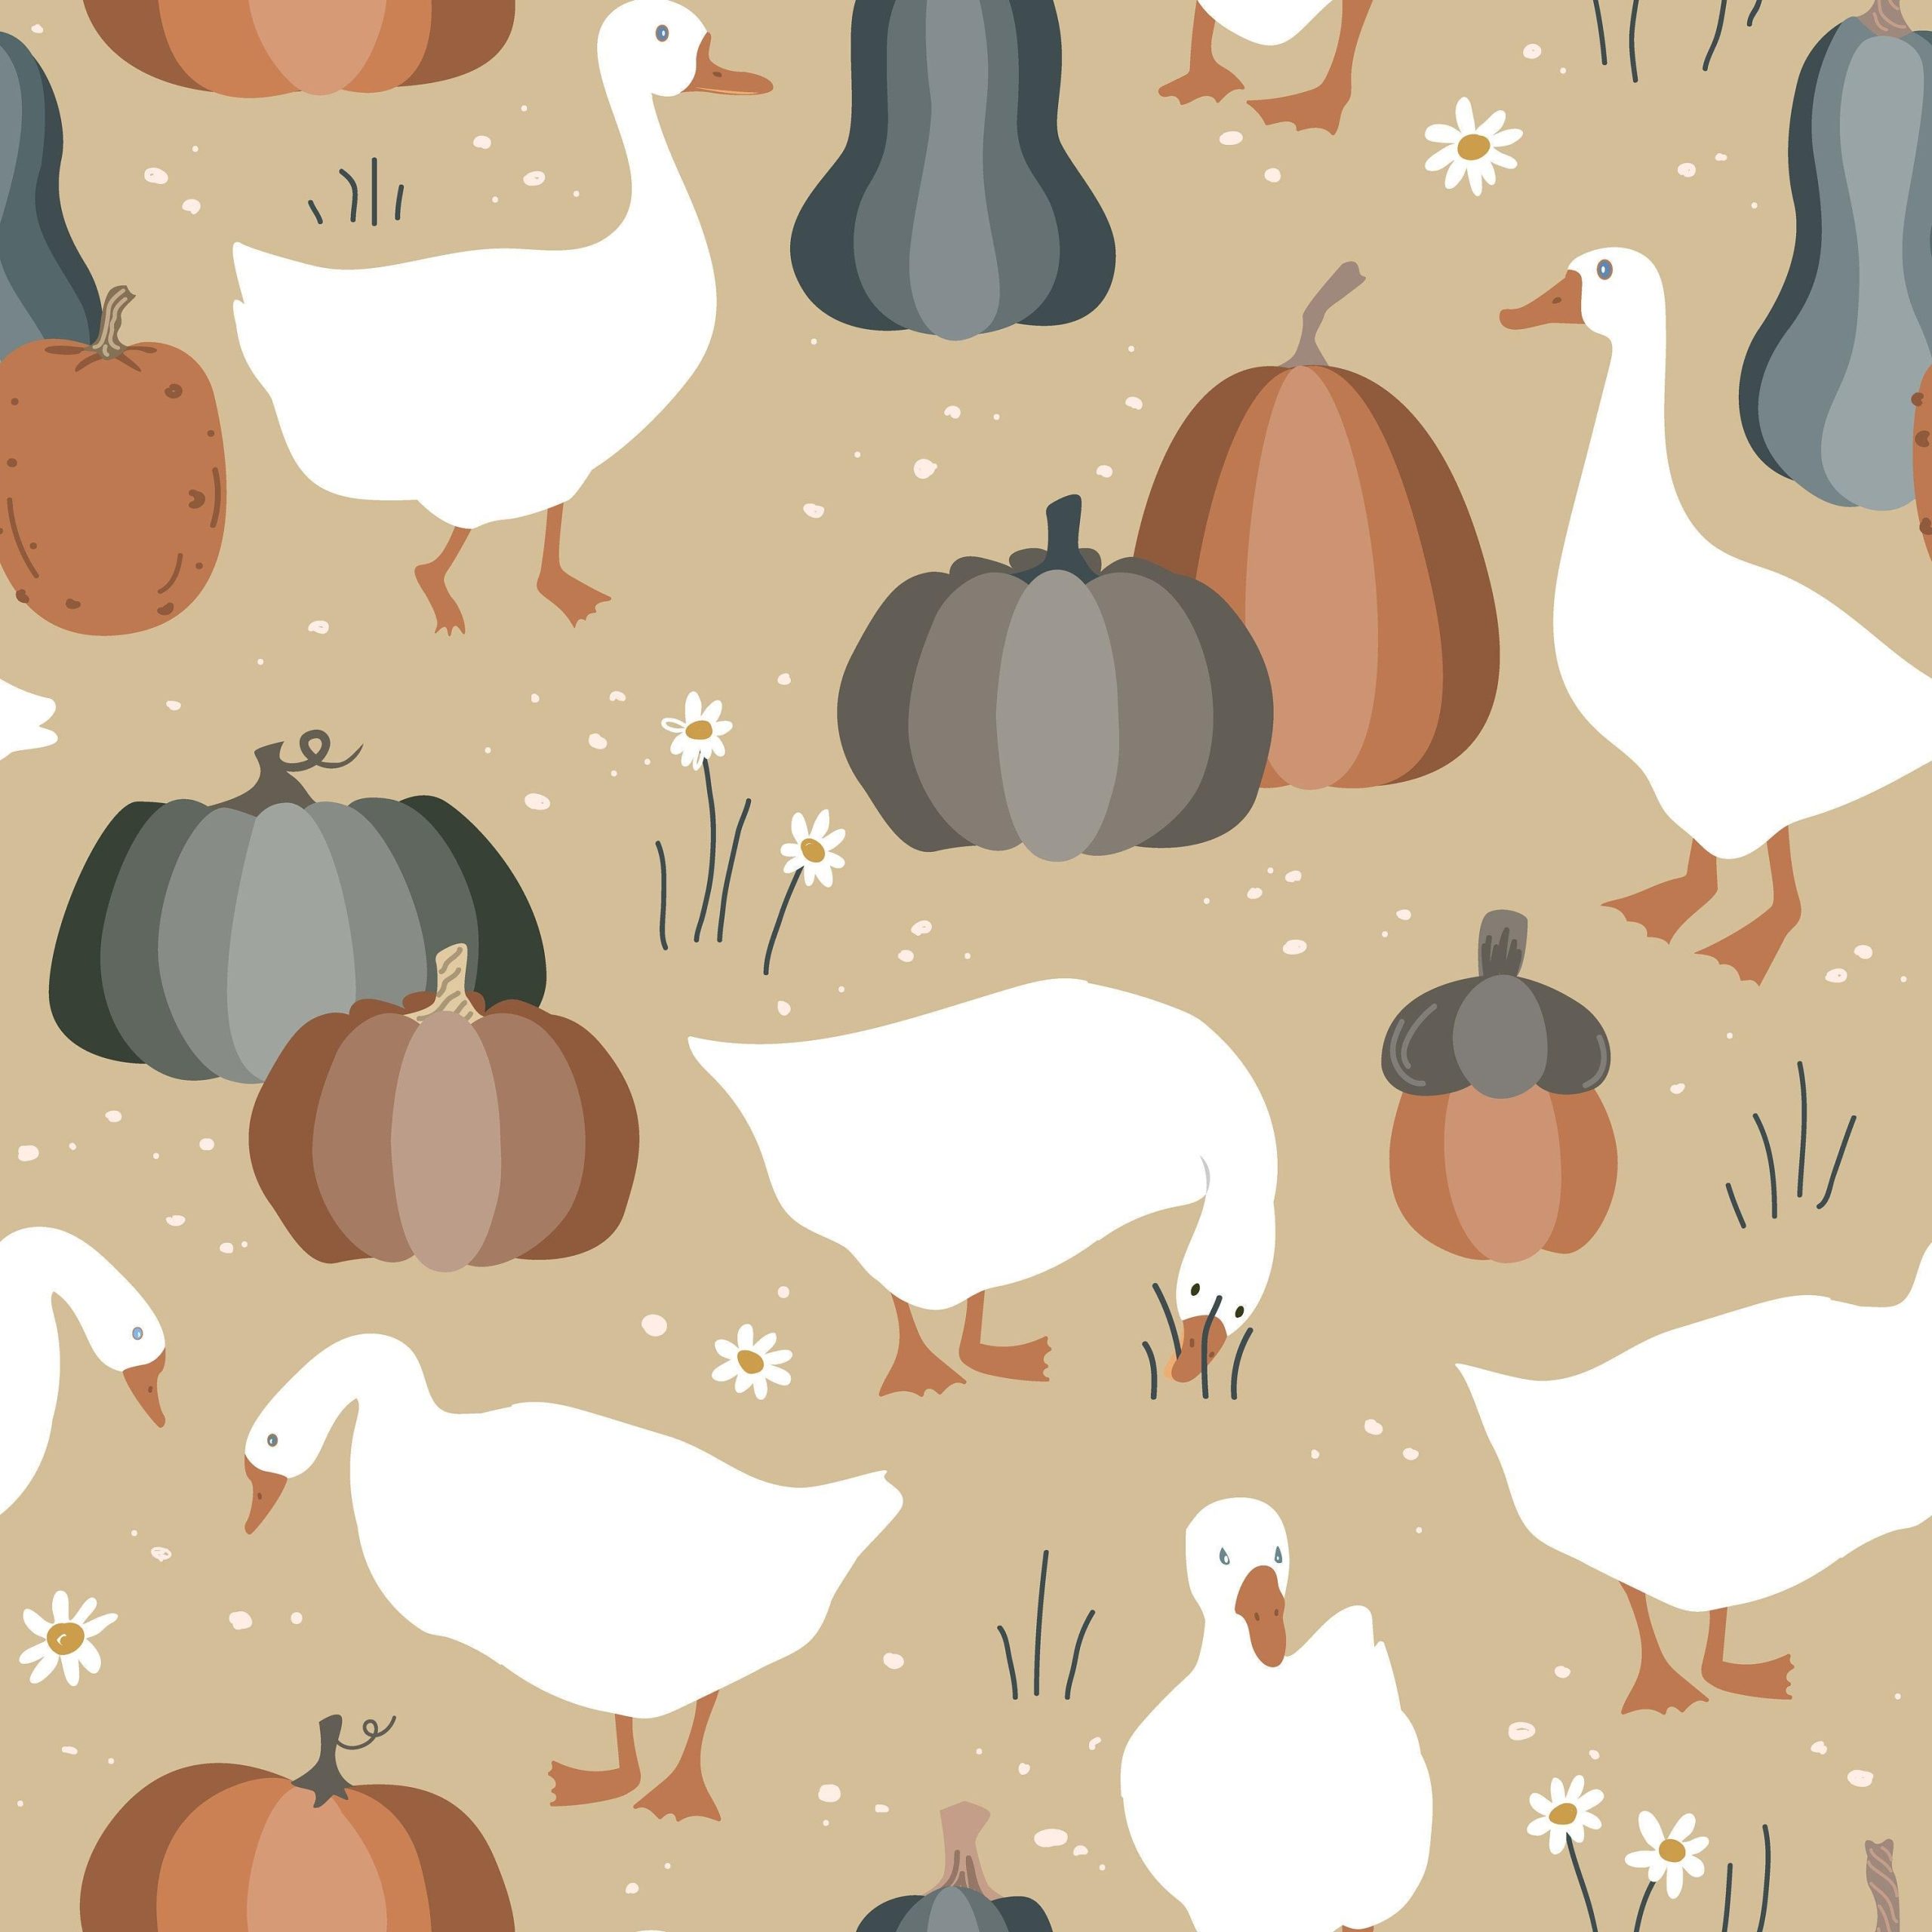 Thanksgiving Patterns 1080p Wallpaper